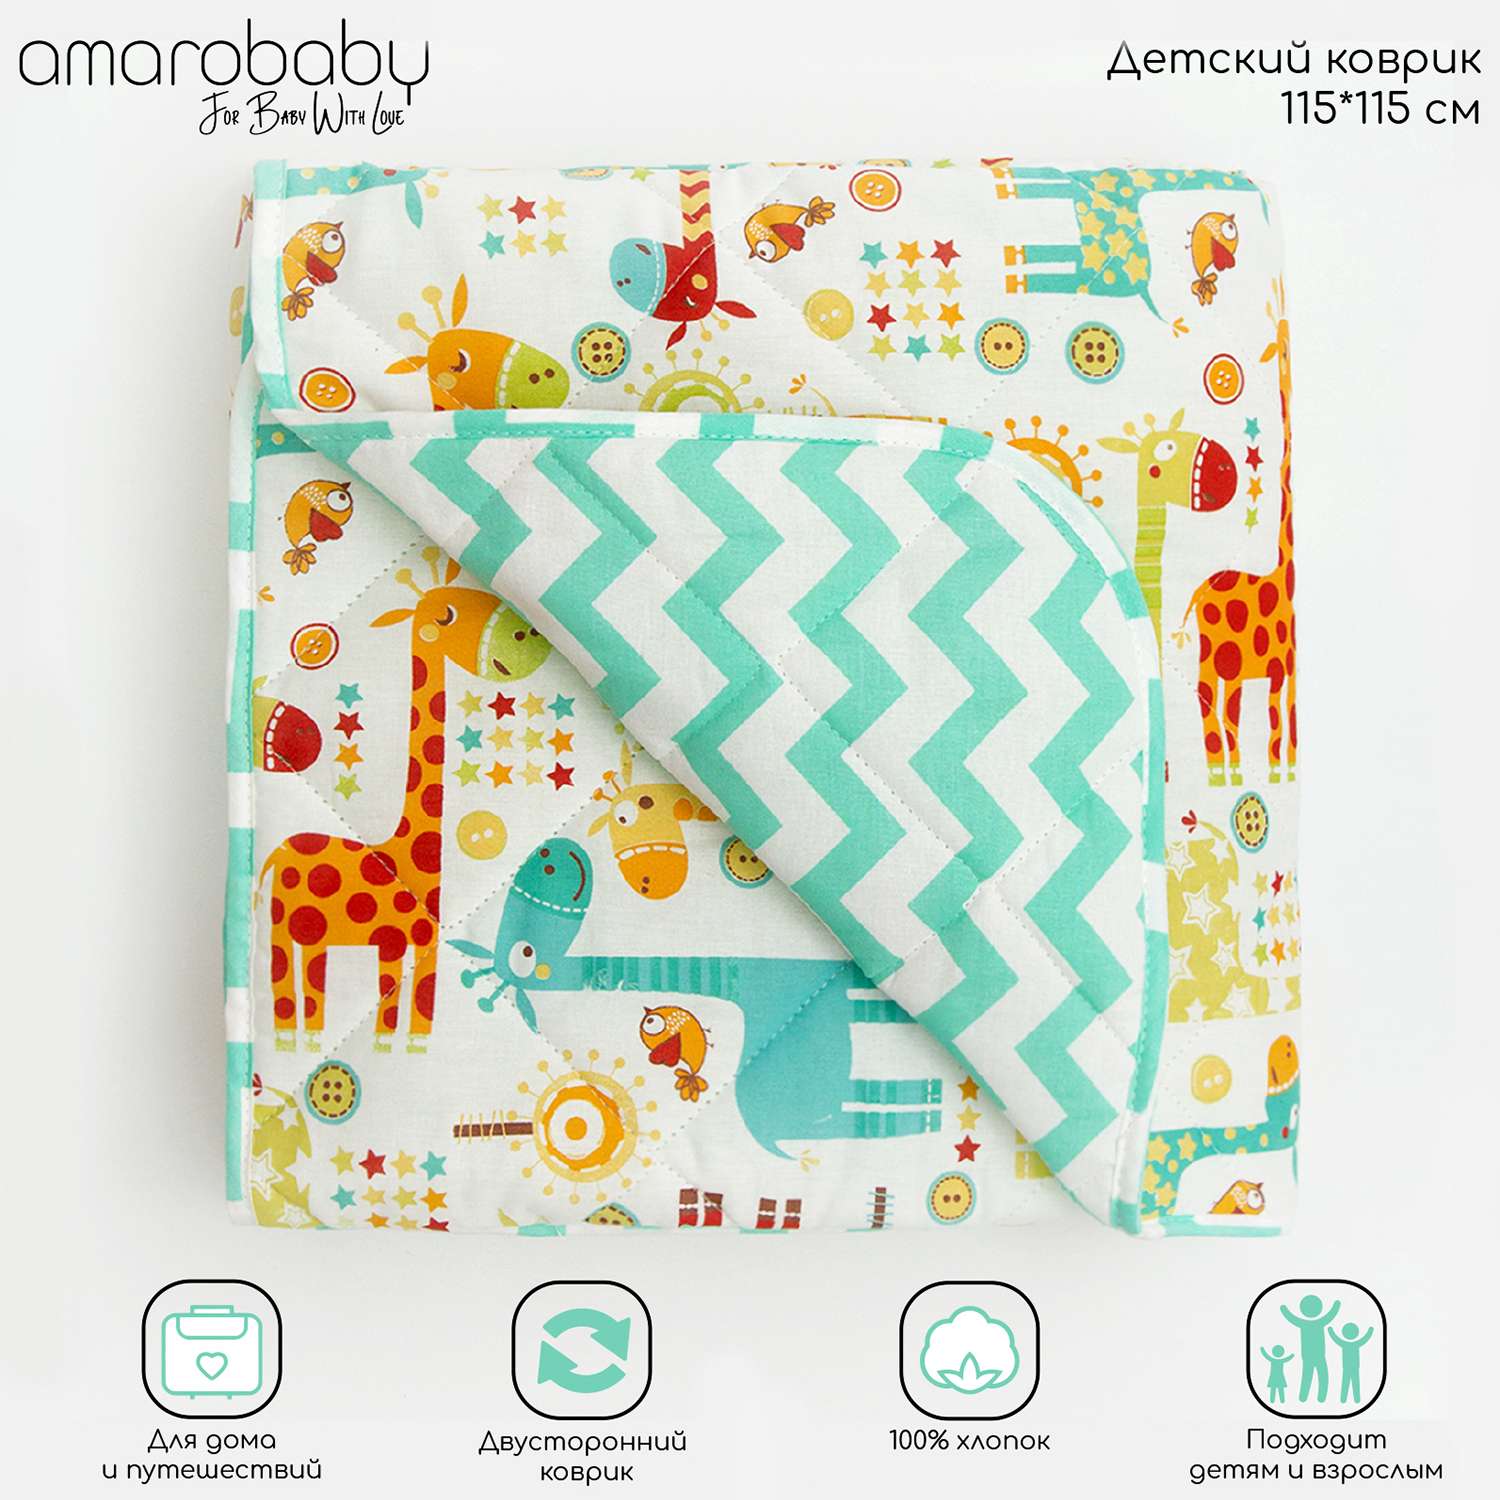 Коврик детский стёганный AmaroBaby Soft Mat 115х115 см Жирафики бирюзовый - фото 2